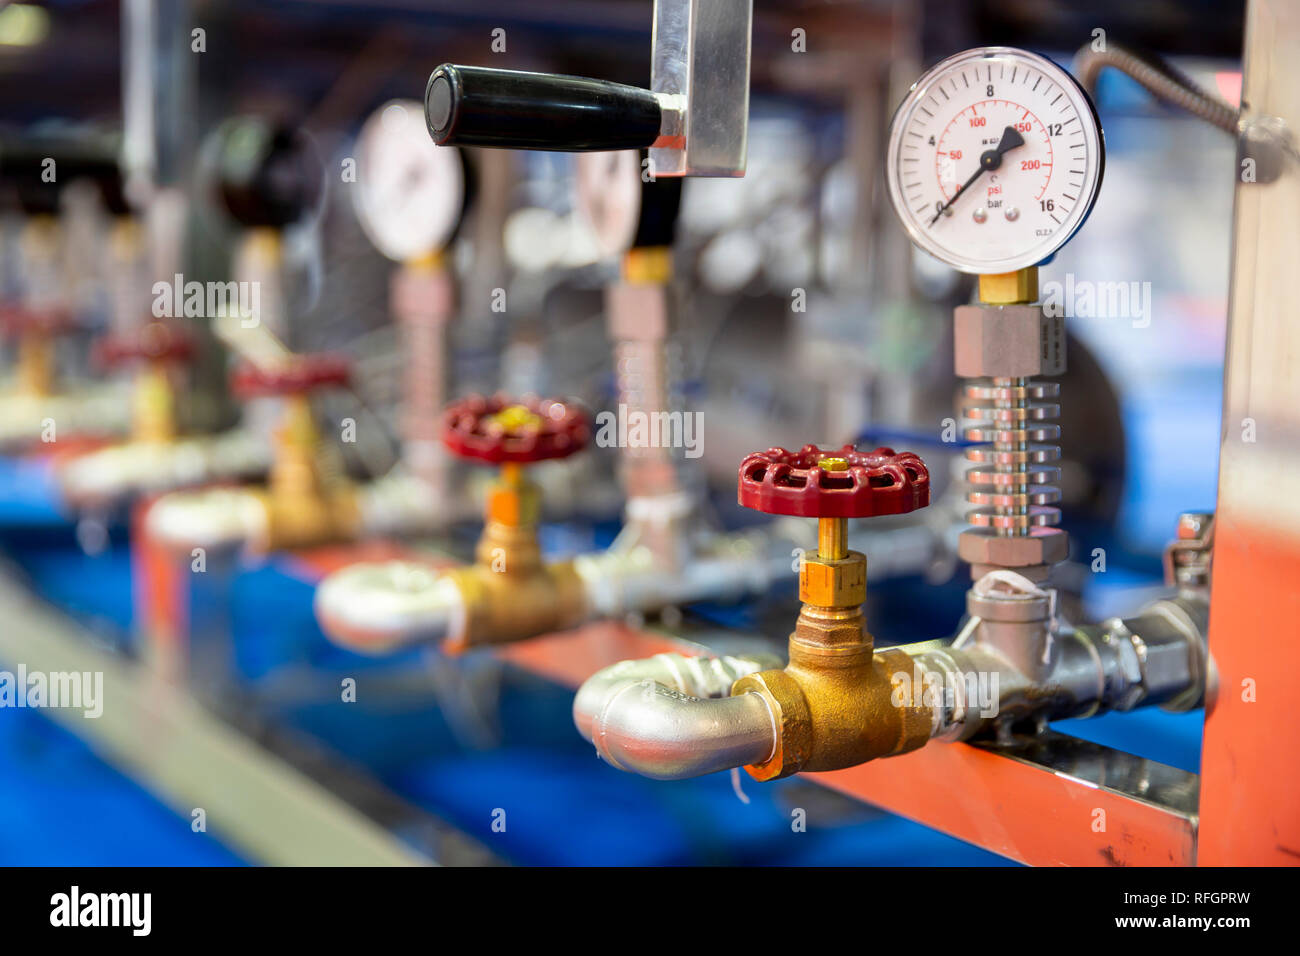 Pressione di strumento di misura - bar, psi. Red valvole metalliche sulle tubazioni. Un dispositivo di pressione per il sistema dell'industria. Foto Stock